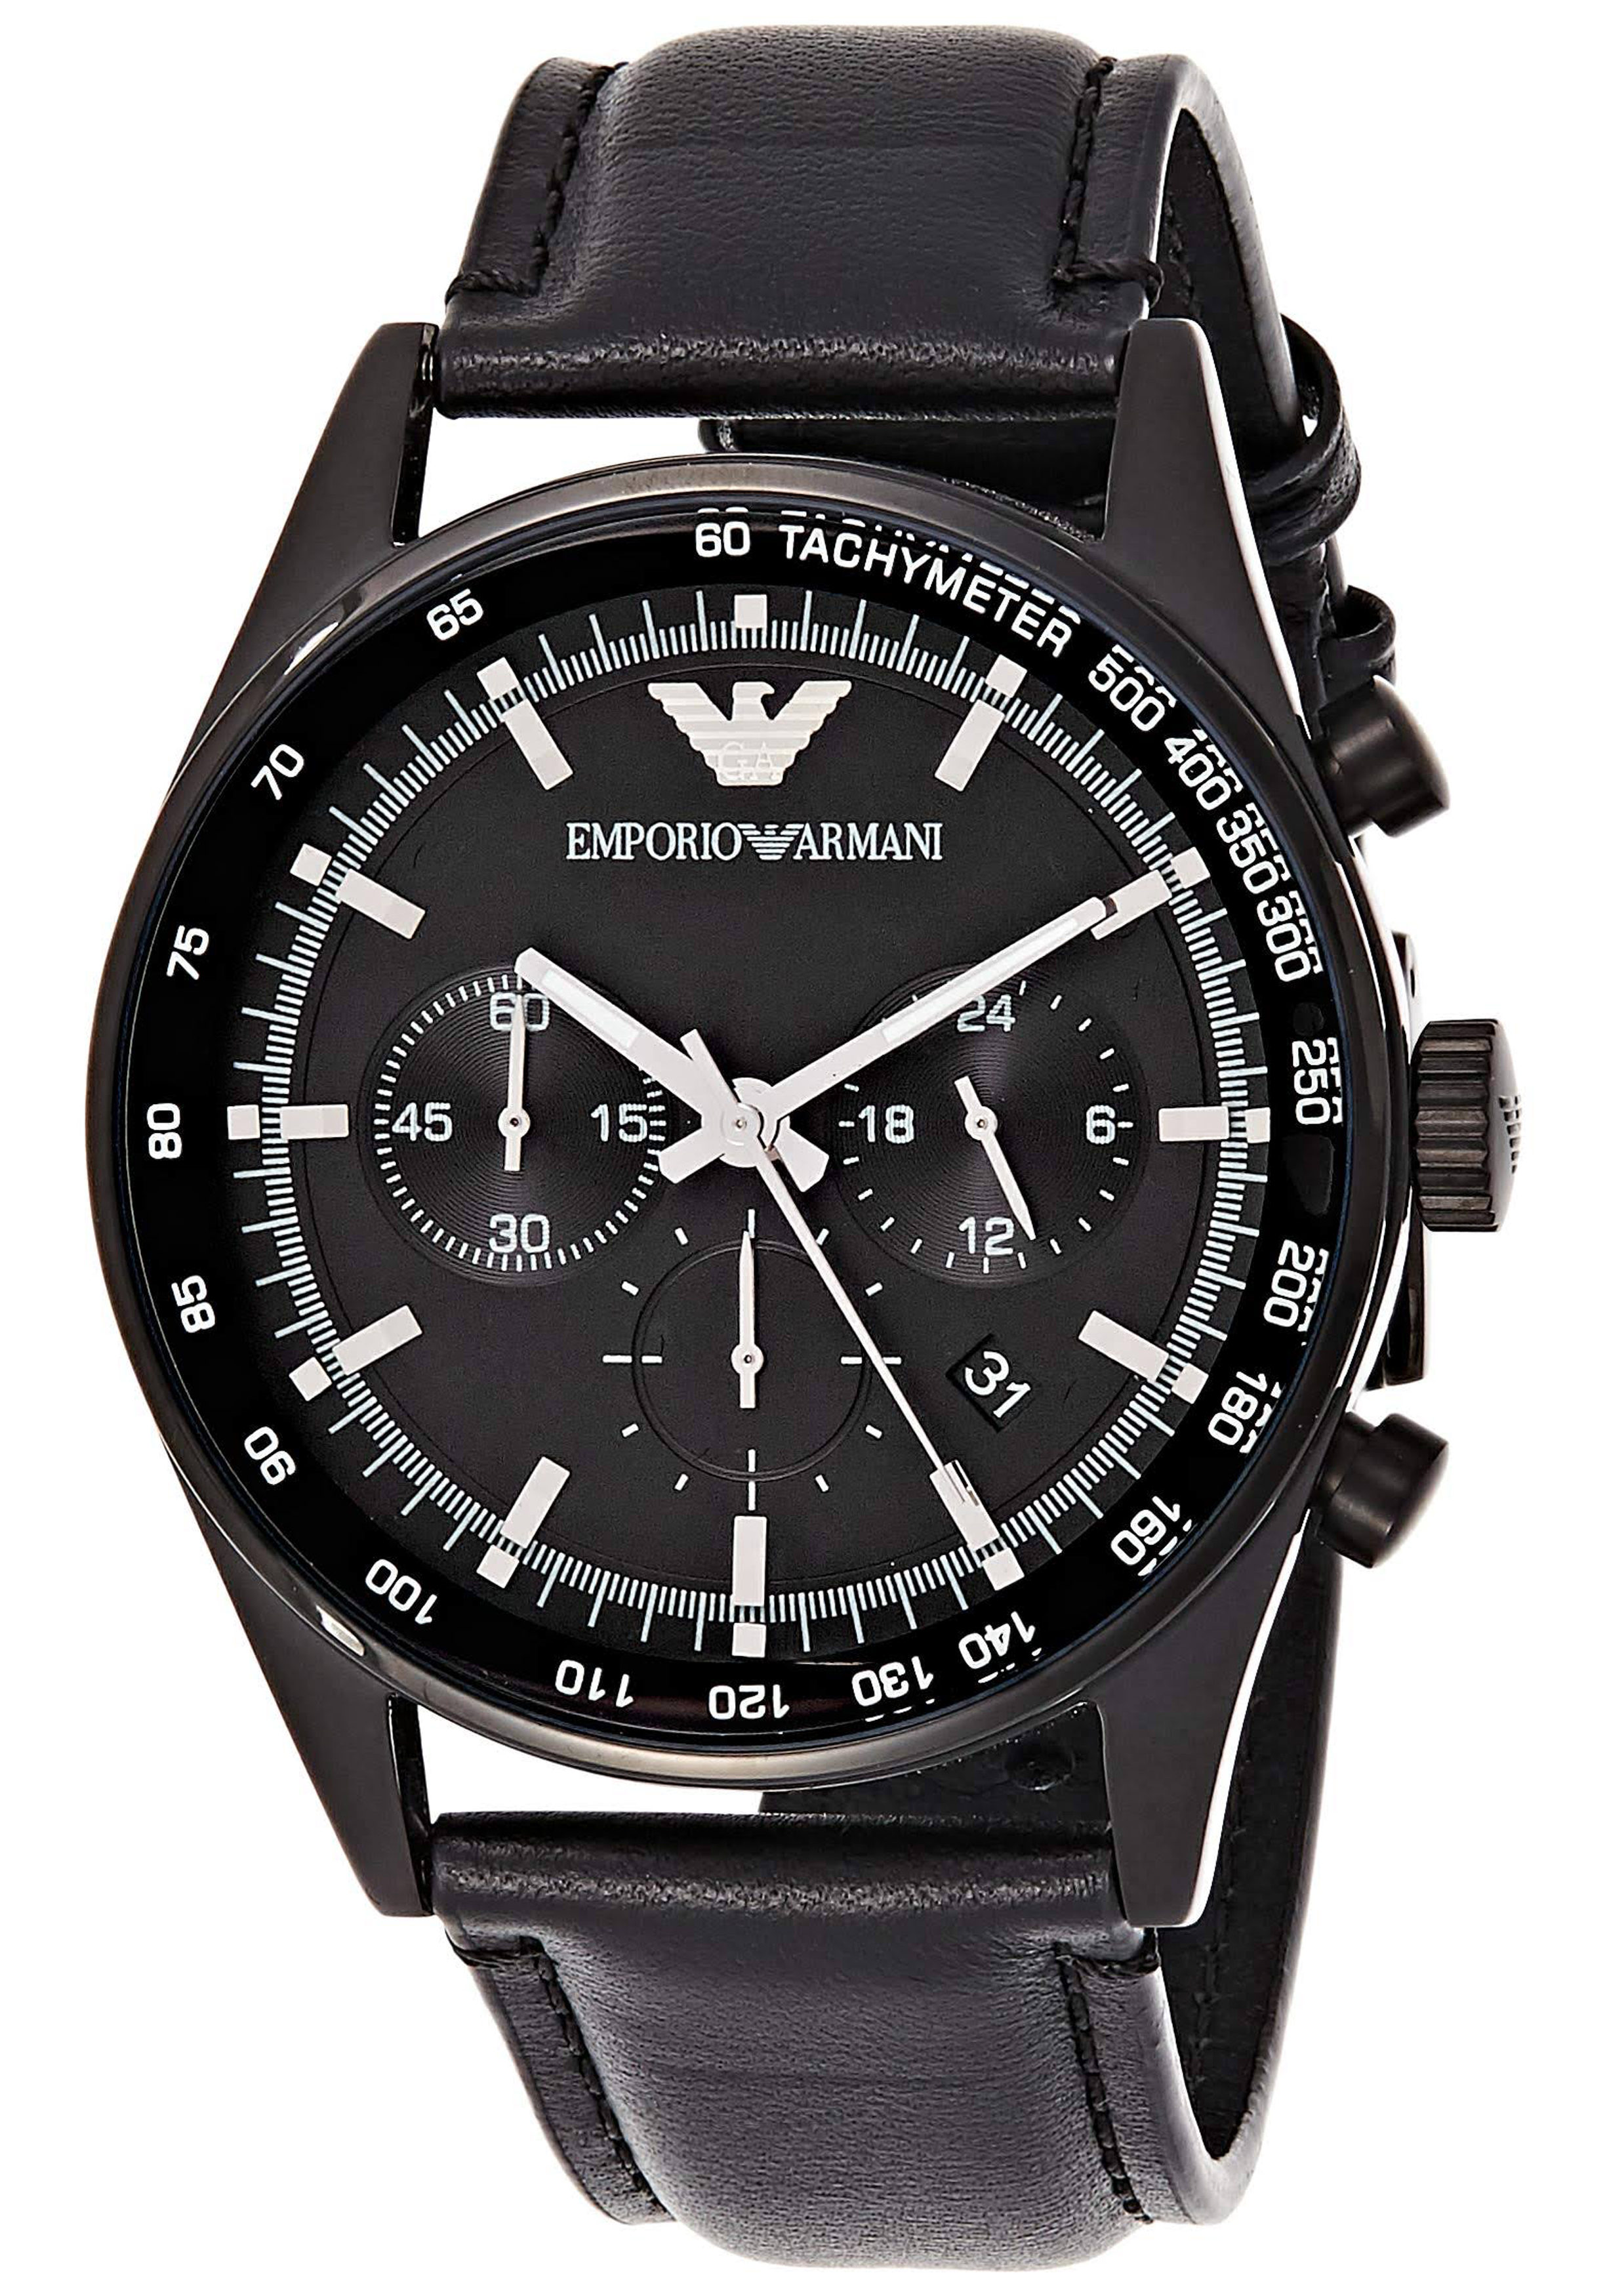 Onderdrukking Afspraak Aap Armani heren horloge (43 mm), zwart met zwart leren band - Shop de nieuwste  voorjaarsmode